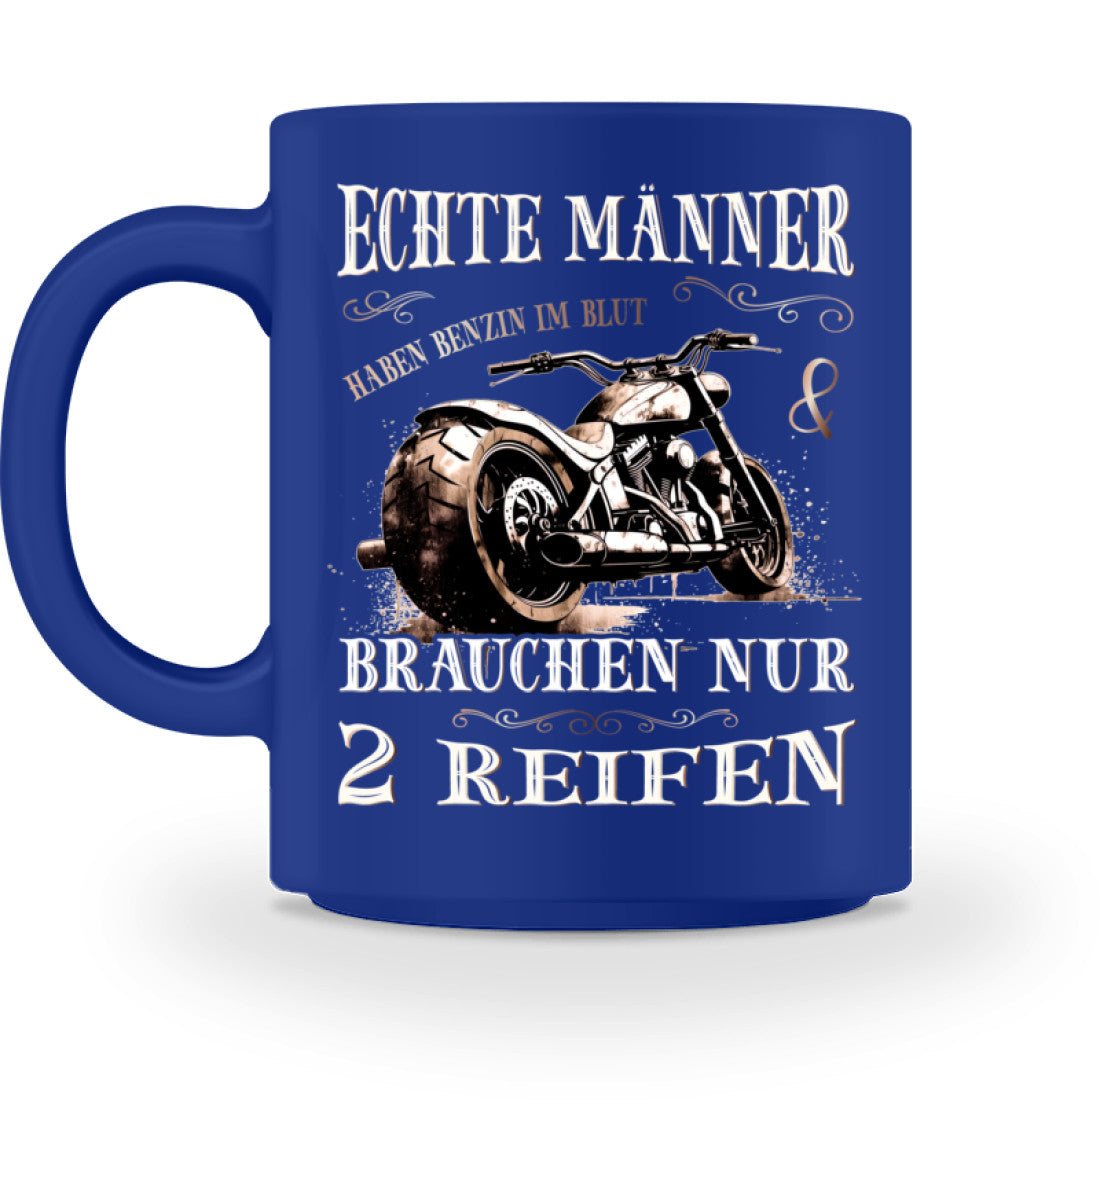 Eine Tasse für Motorradfahrer von Wingbikers, mit dem beidseitigen Aufdruck, Echte Männer brauchen nur 2 Reifen, in royal blau.